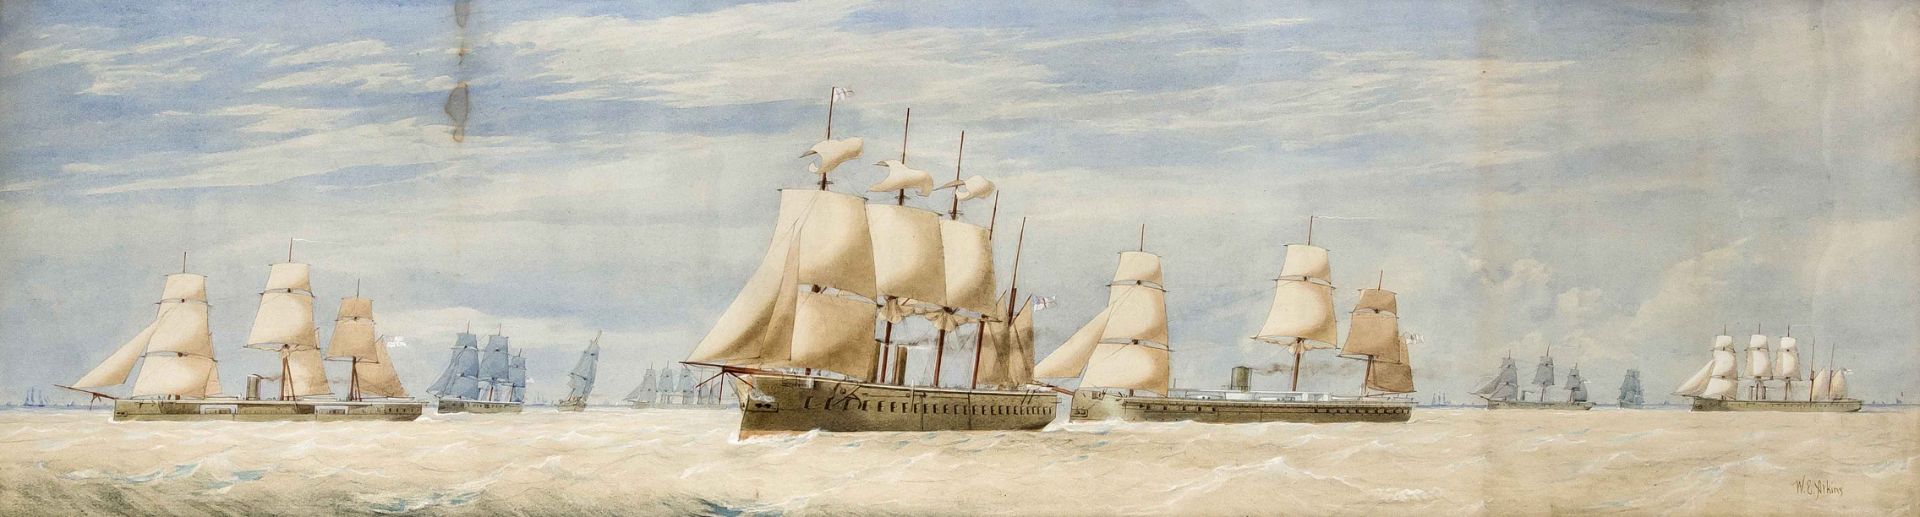 Atkins, William Edward. Um 1842 - Portsmouth - 1910. Segeldampfer unter englischer Flagge.Aquarell